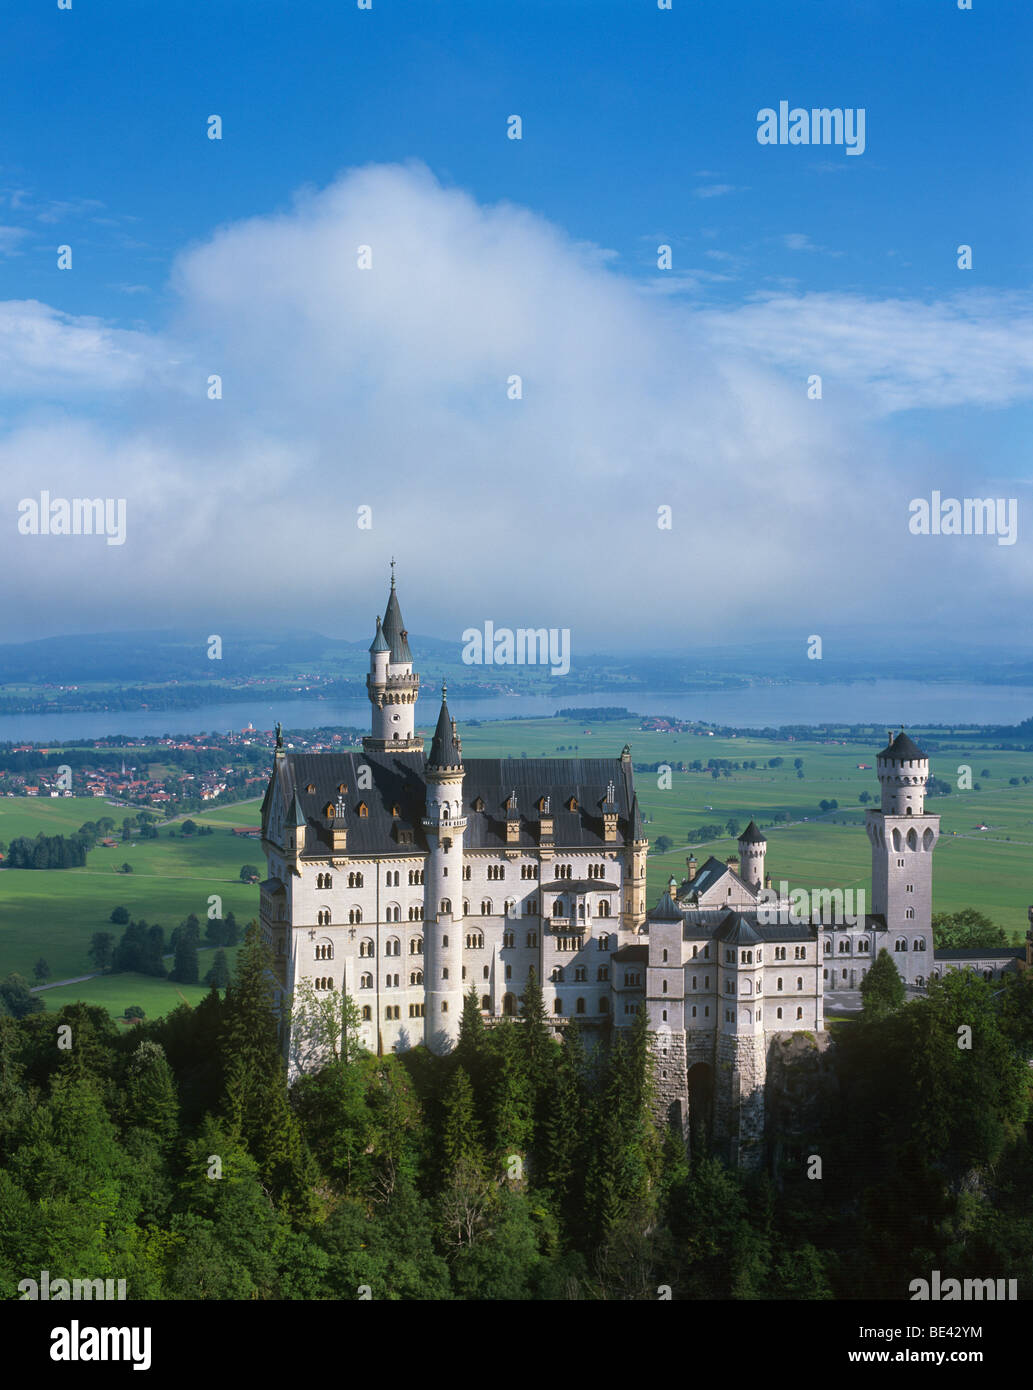 Deutschland, Bayern, Hohenschwangau; Blick auf das Schloss Neuschwanstein von der Marienbrücke aus gesehen Stockfoto